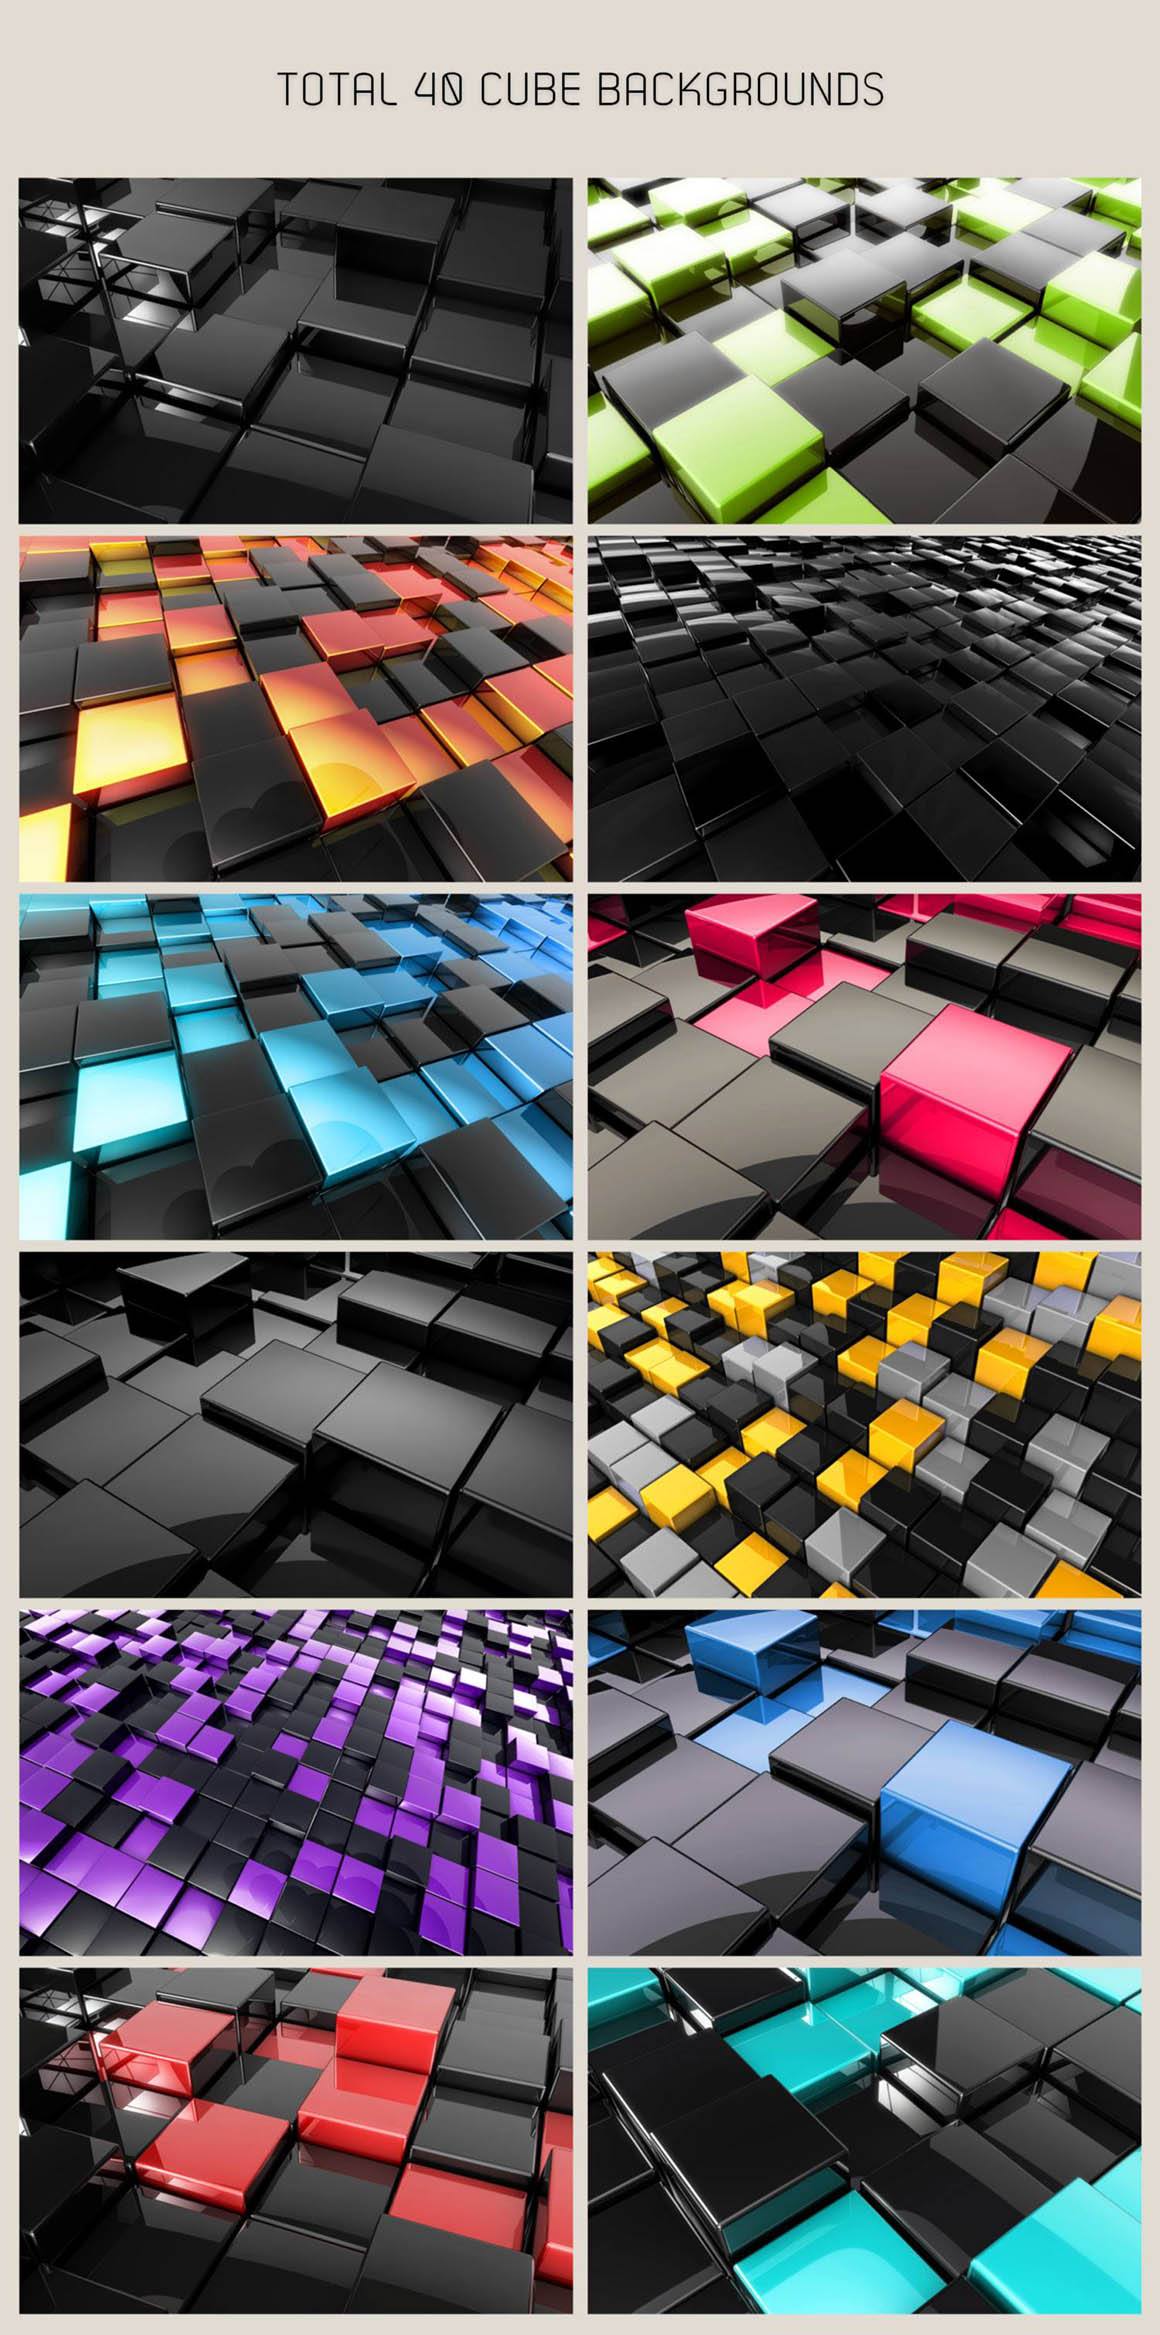 光滑的3D立方体背景图 Free 3D Glossy Cube Backgrounds